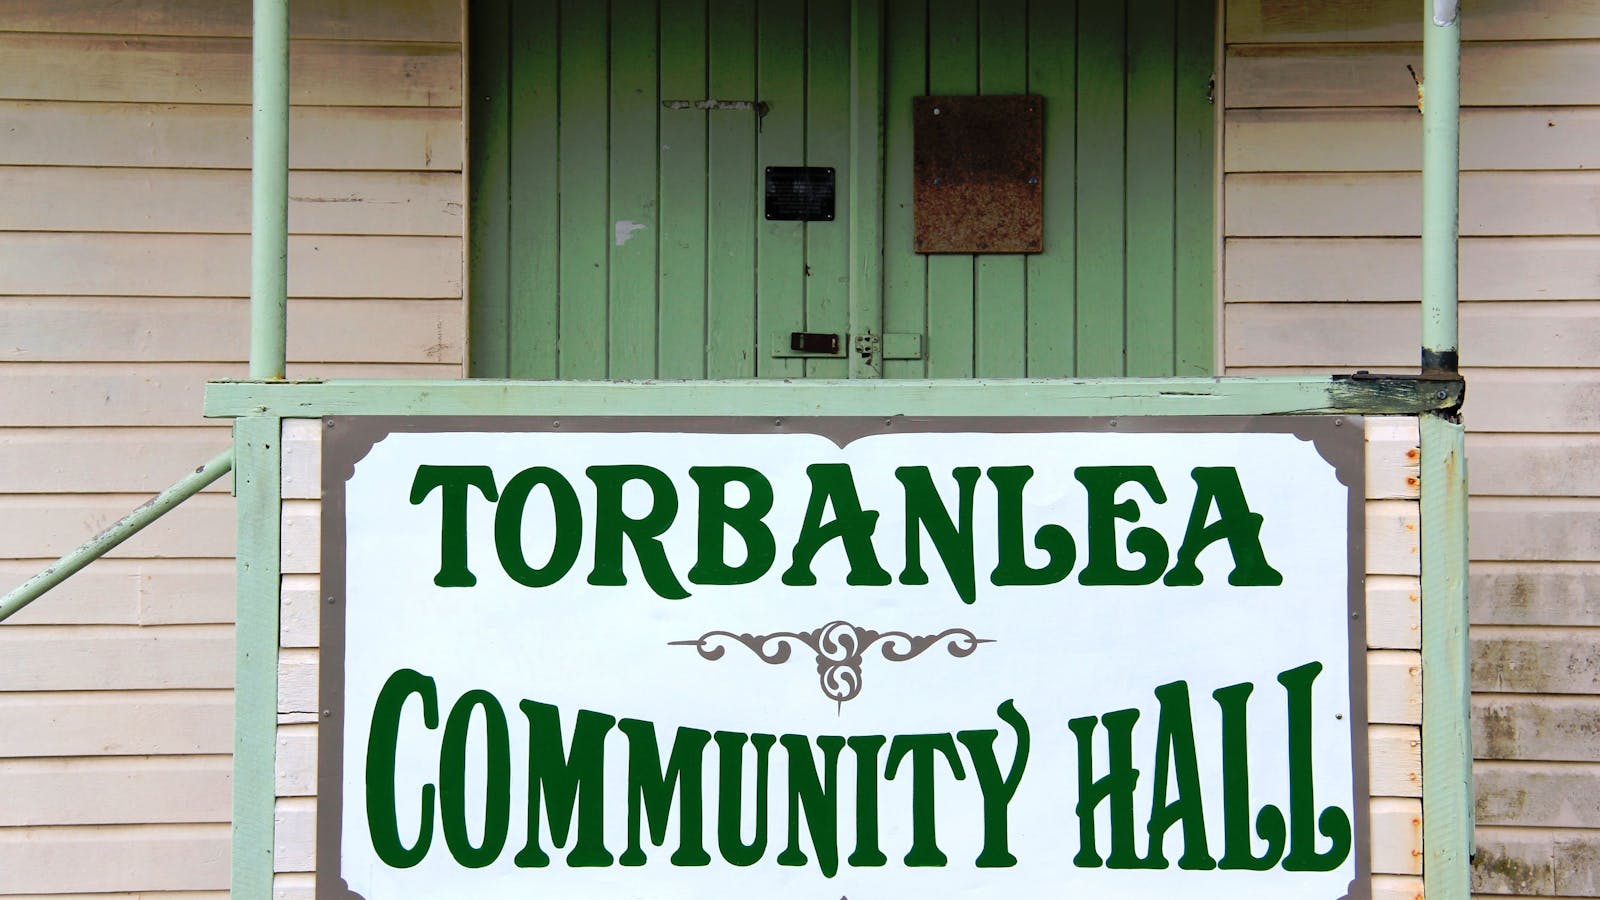 Torbanlea Community Hall